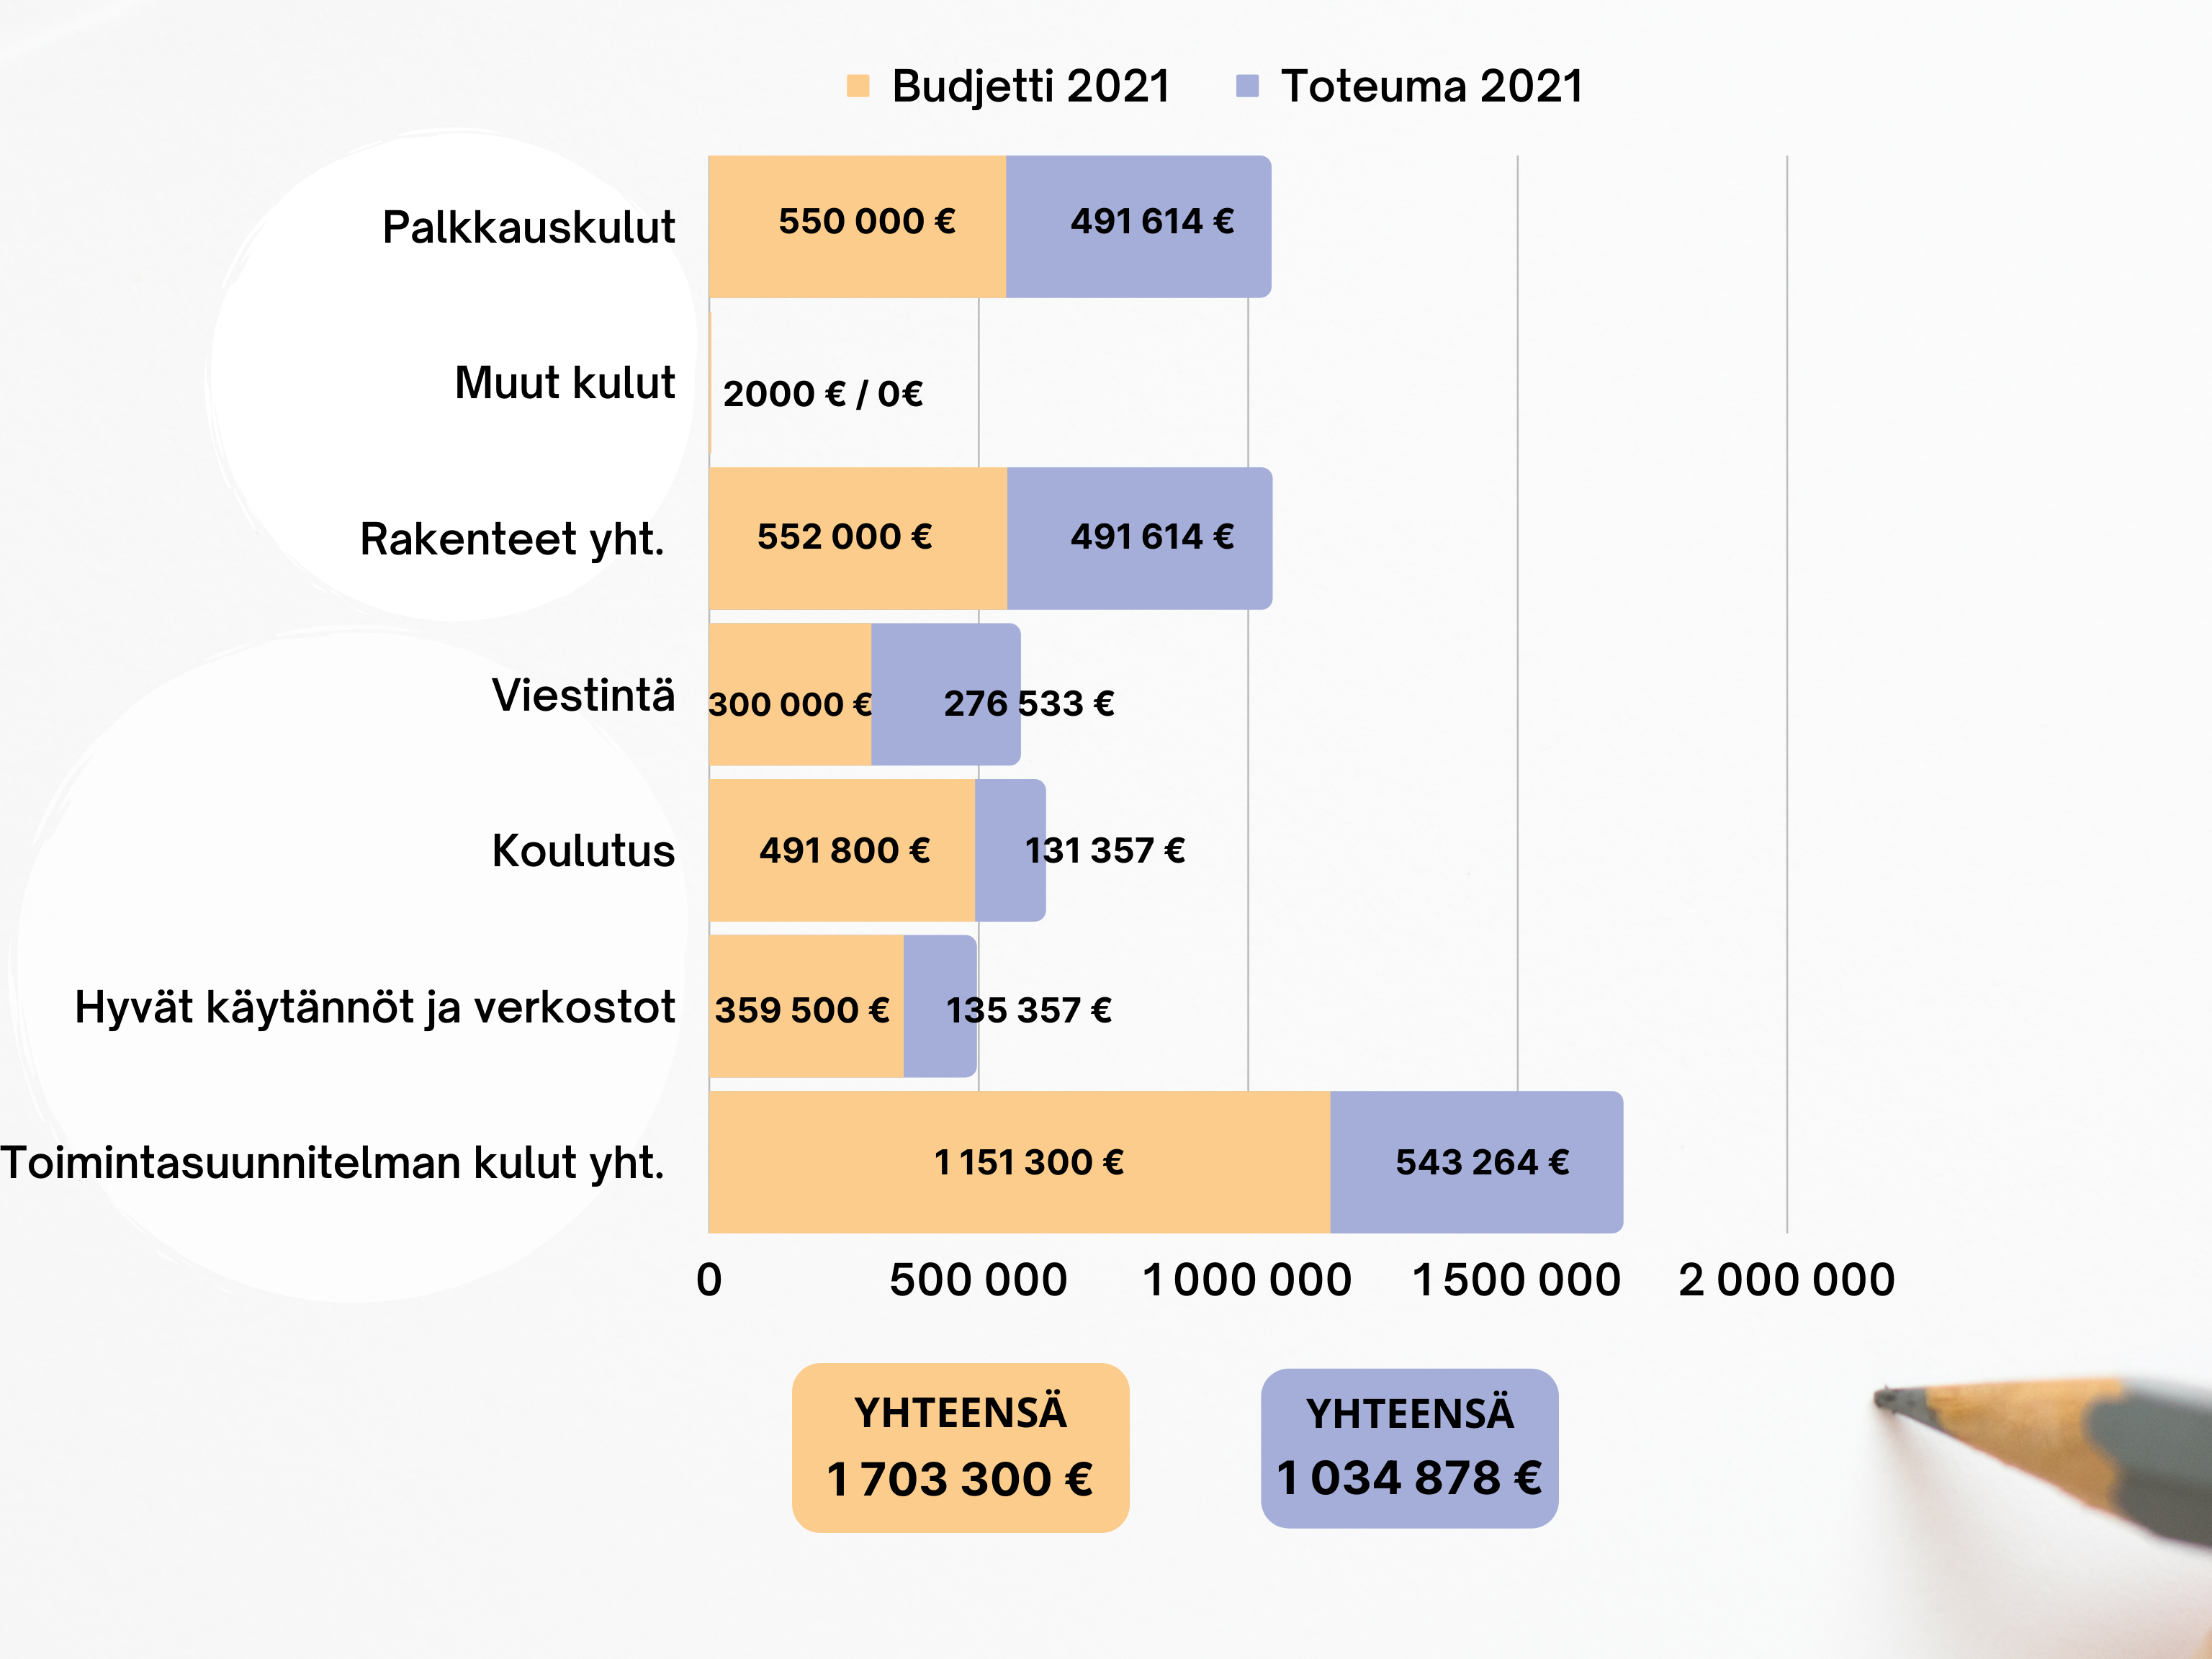 Pylväskuvio vuoden 2021 budjetista ja toteumasta.